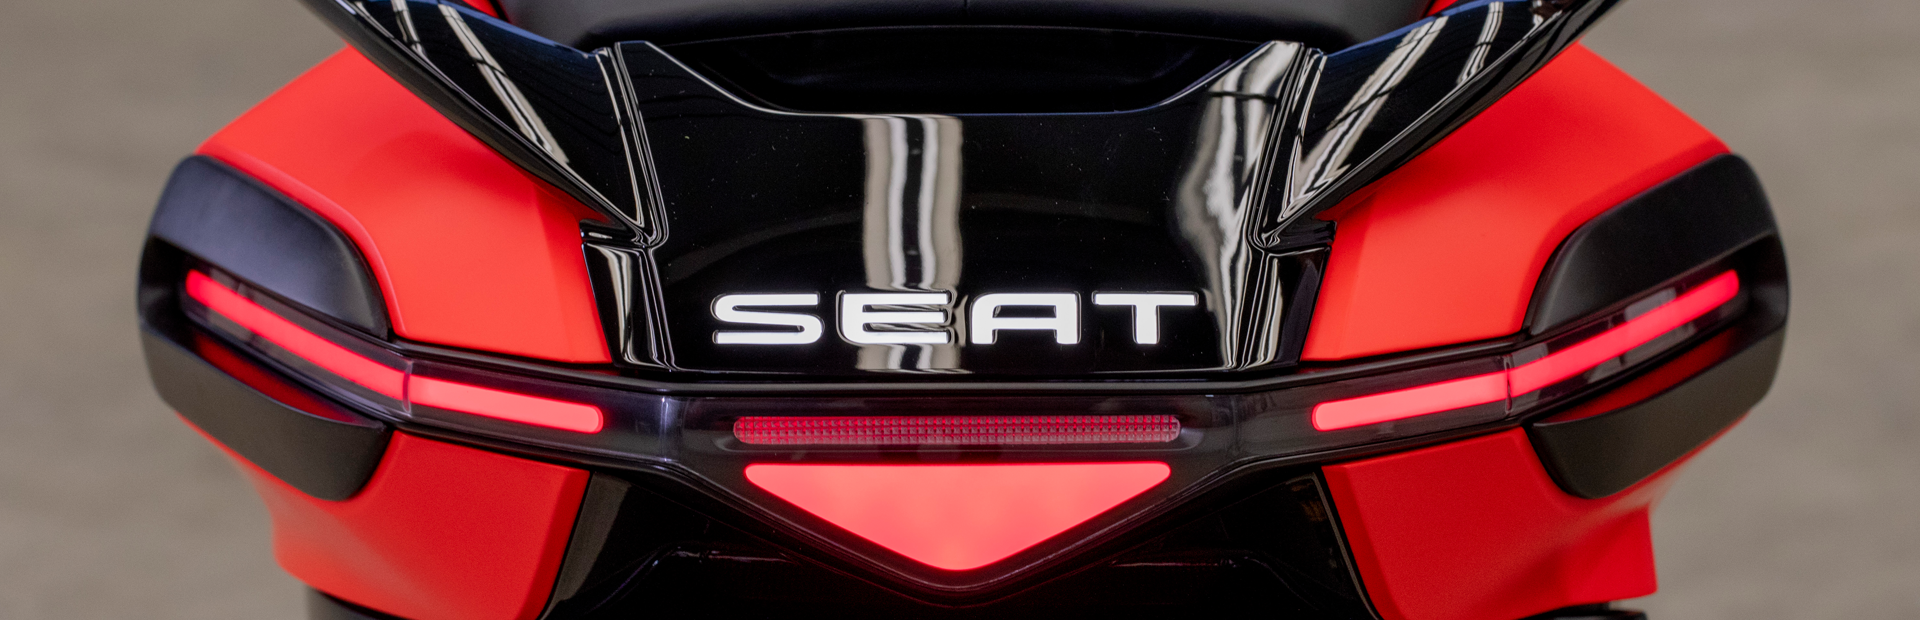 SEAT e-Scooter. Pierwszy elektryczny jednoślad marki